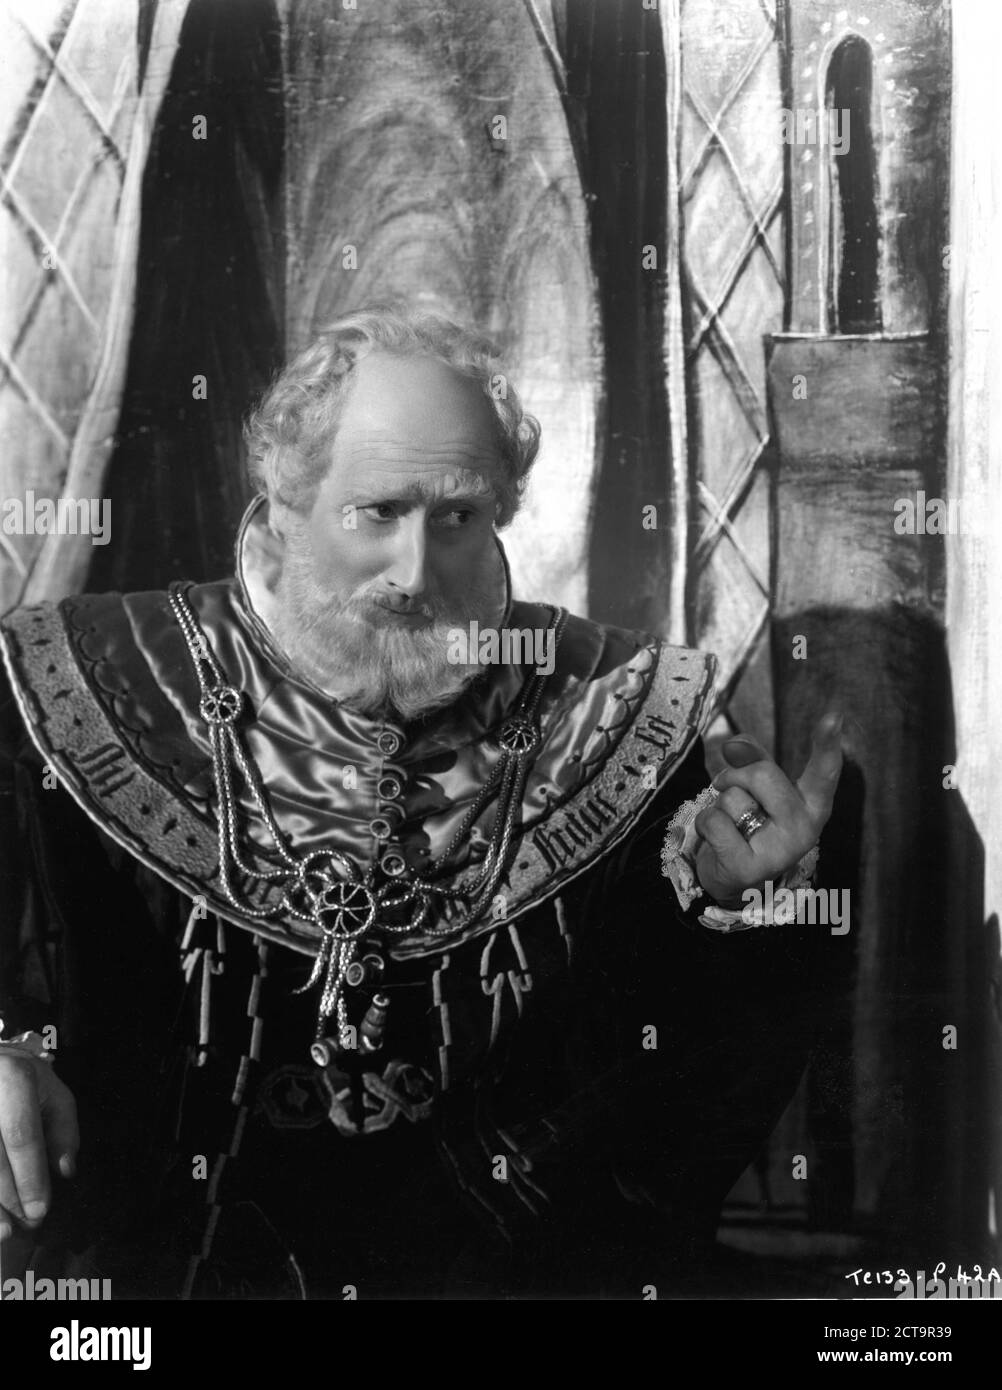 FELIX AYLMER Portrait comme Polonius dans HAMEAU 1948 réalisateur LAURENCE OLIVIER joue William Shakespeare musique William Walton Two Cities films / distributeurs de films généraux (GFD) Banque D'Images